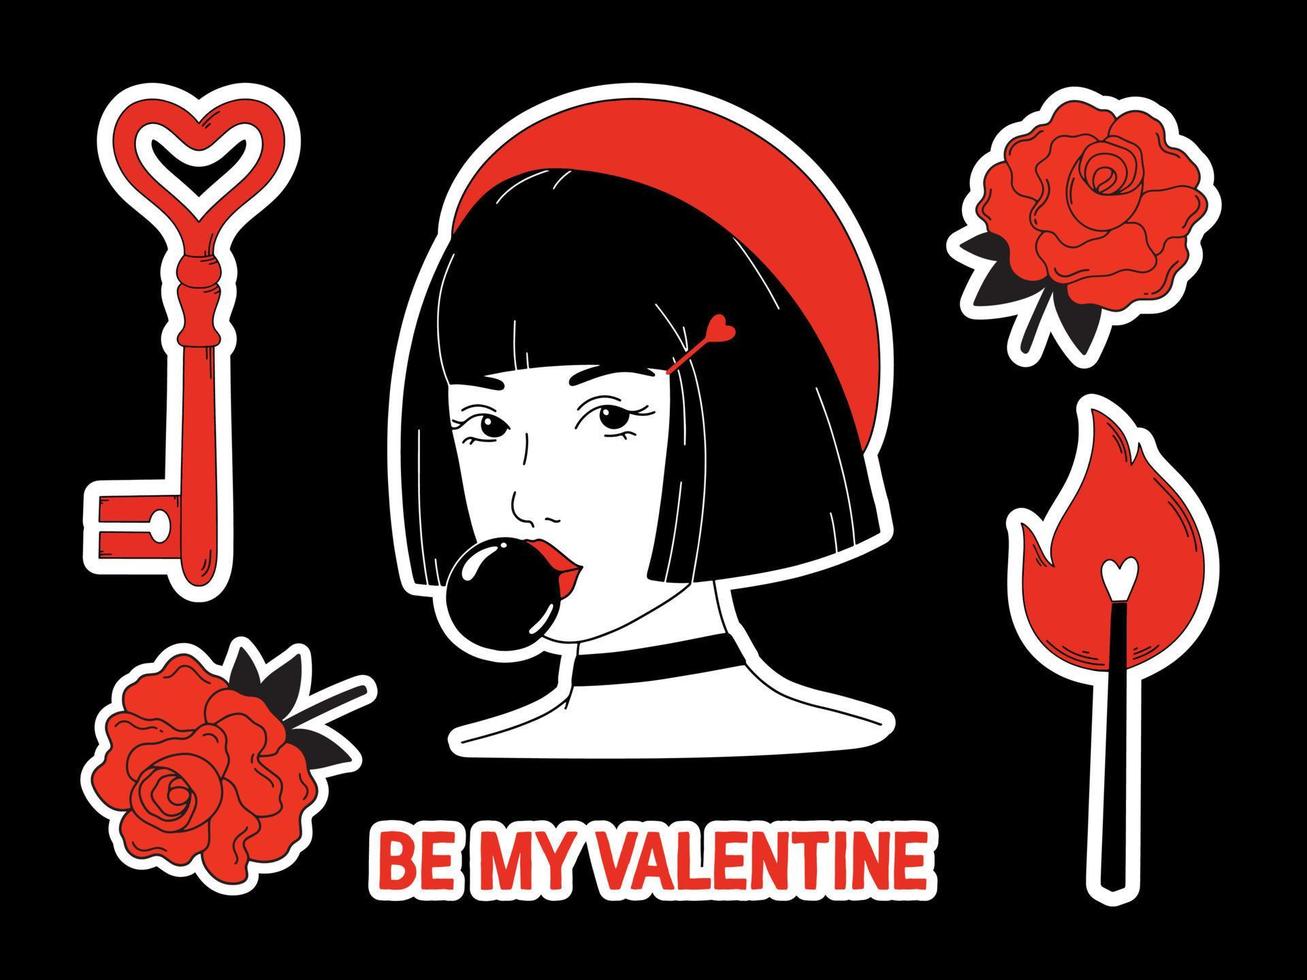 Liebesaufkleber-Vektorset für den Valentinstag. Stilvolle handgezeichnete Illustrationen, ein Mädchen in einer roten Baskenmütze, ein herzförmiger Schlüssel, ein brennendes Streichholz, rote Rosen. trendiges modernes Design. vektor